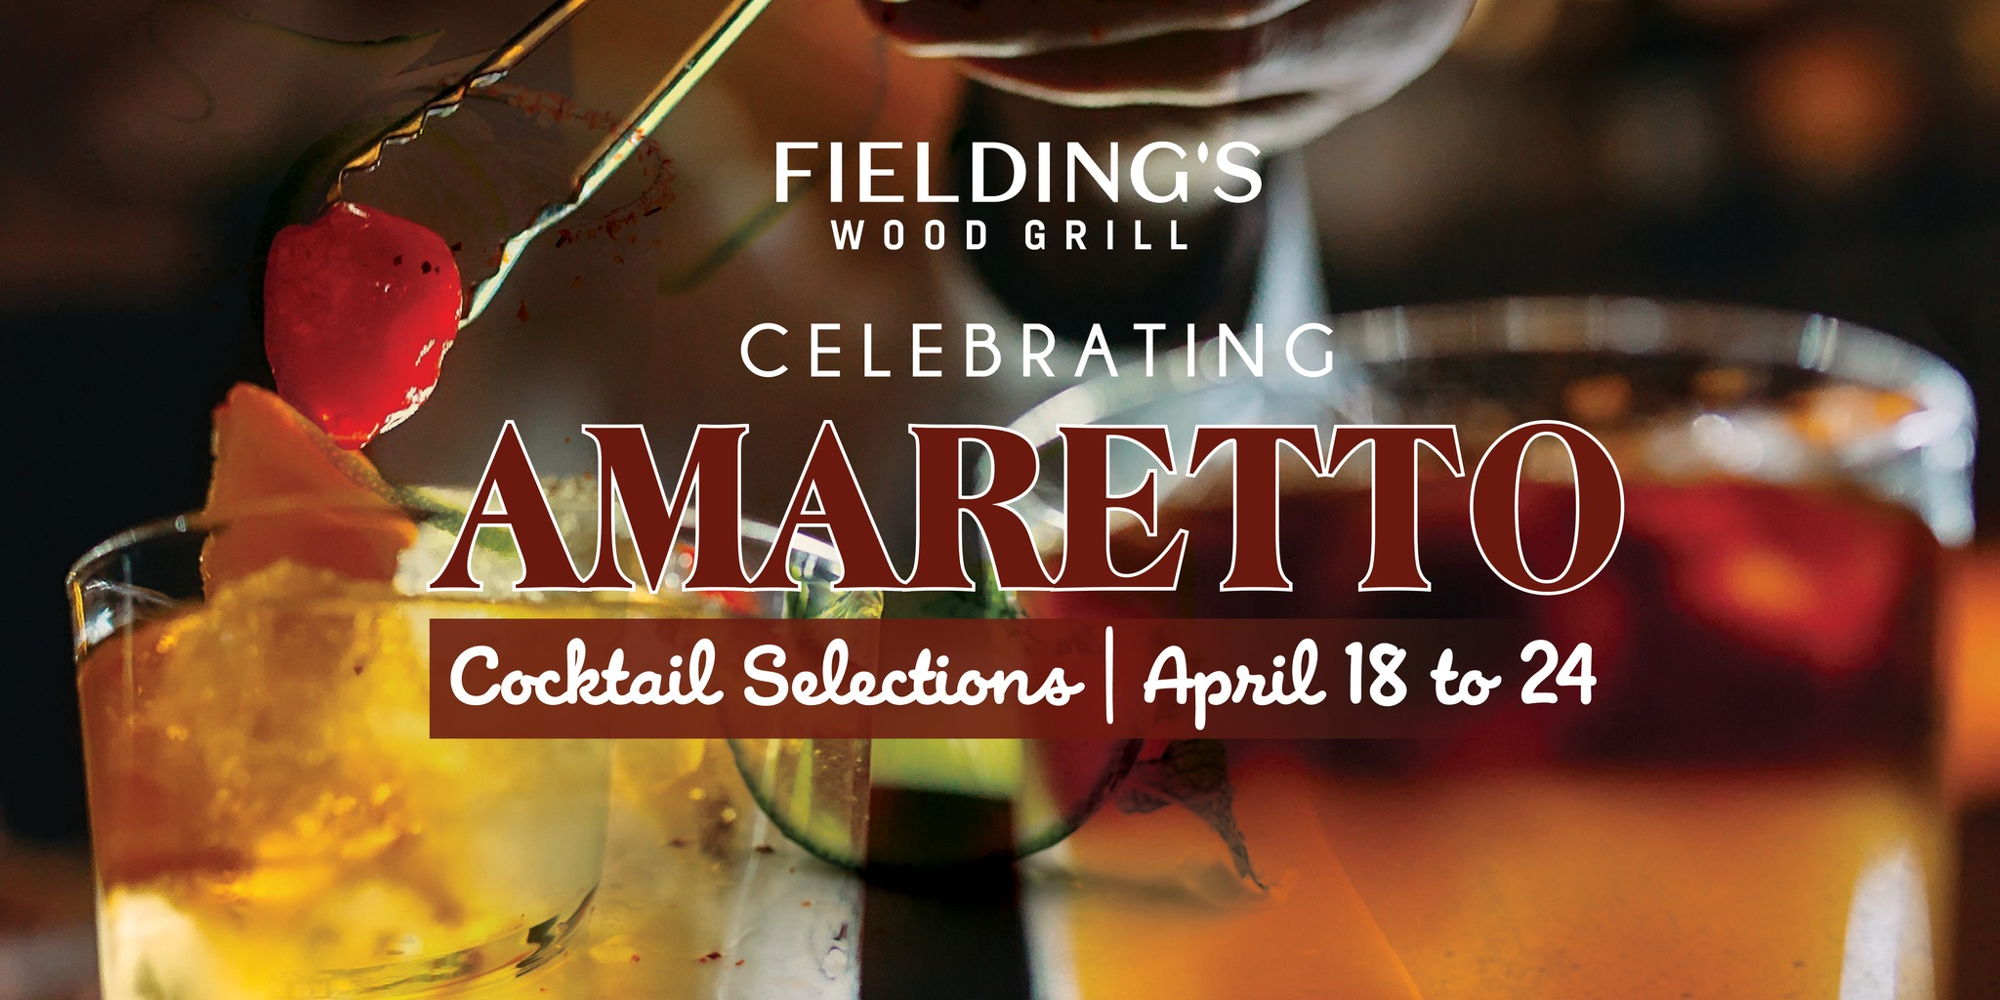 Amaretto Celebration promotional image